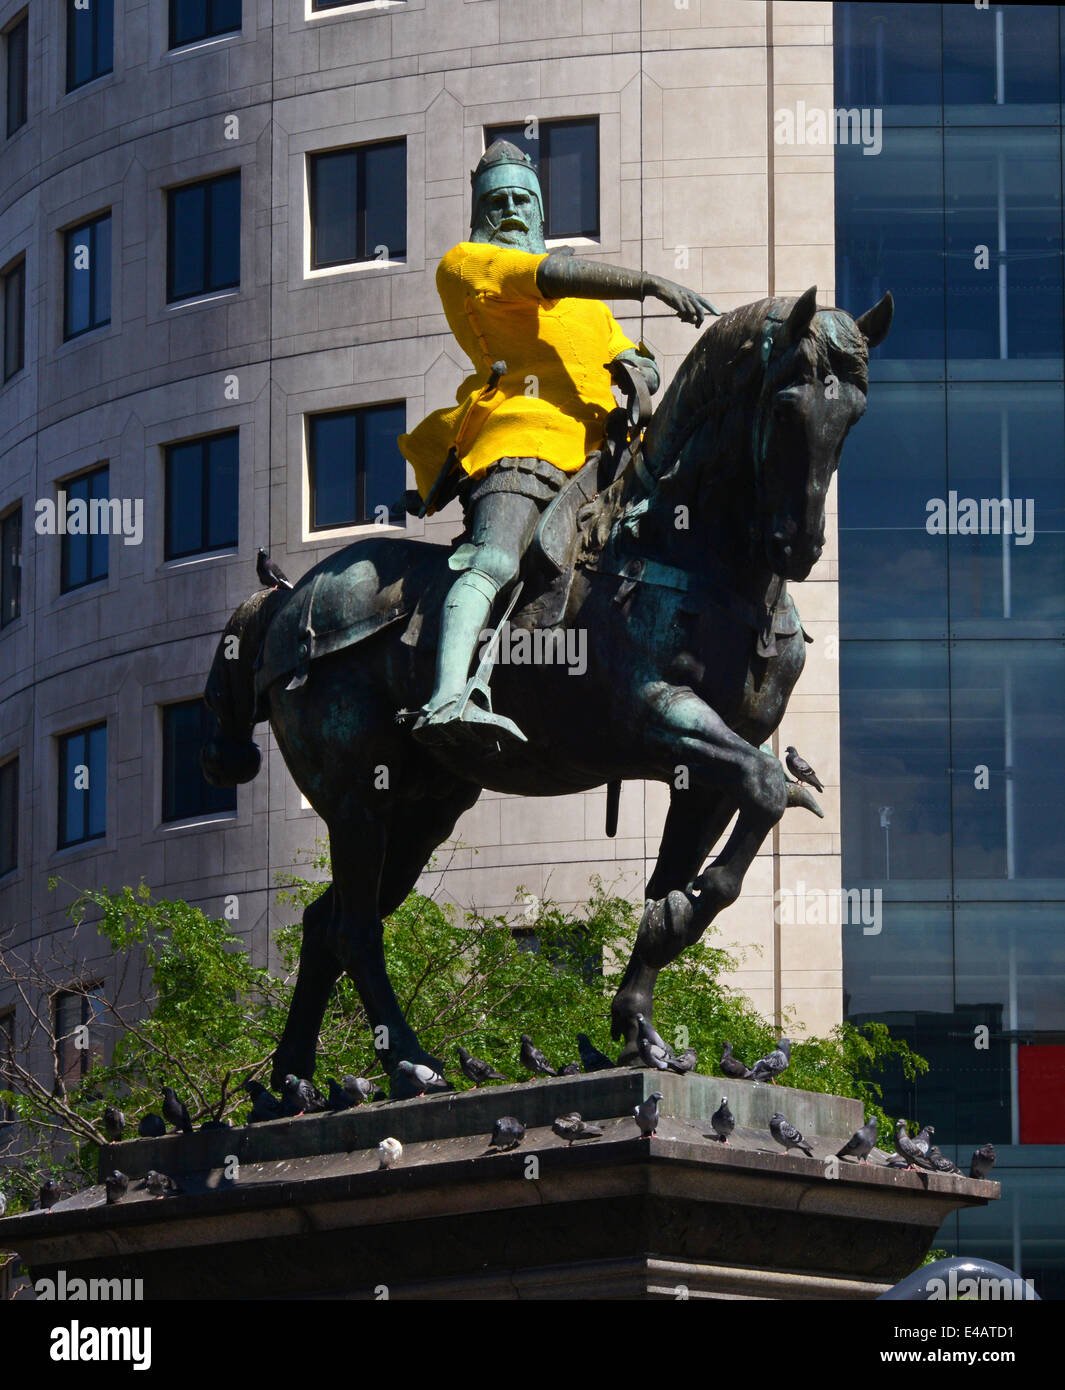 Principe nero statua in piazza della città indossando maglia gialla che segna l'inizio del tour de France a Leeds Yorkshire Regno Unito Foto Stock